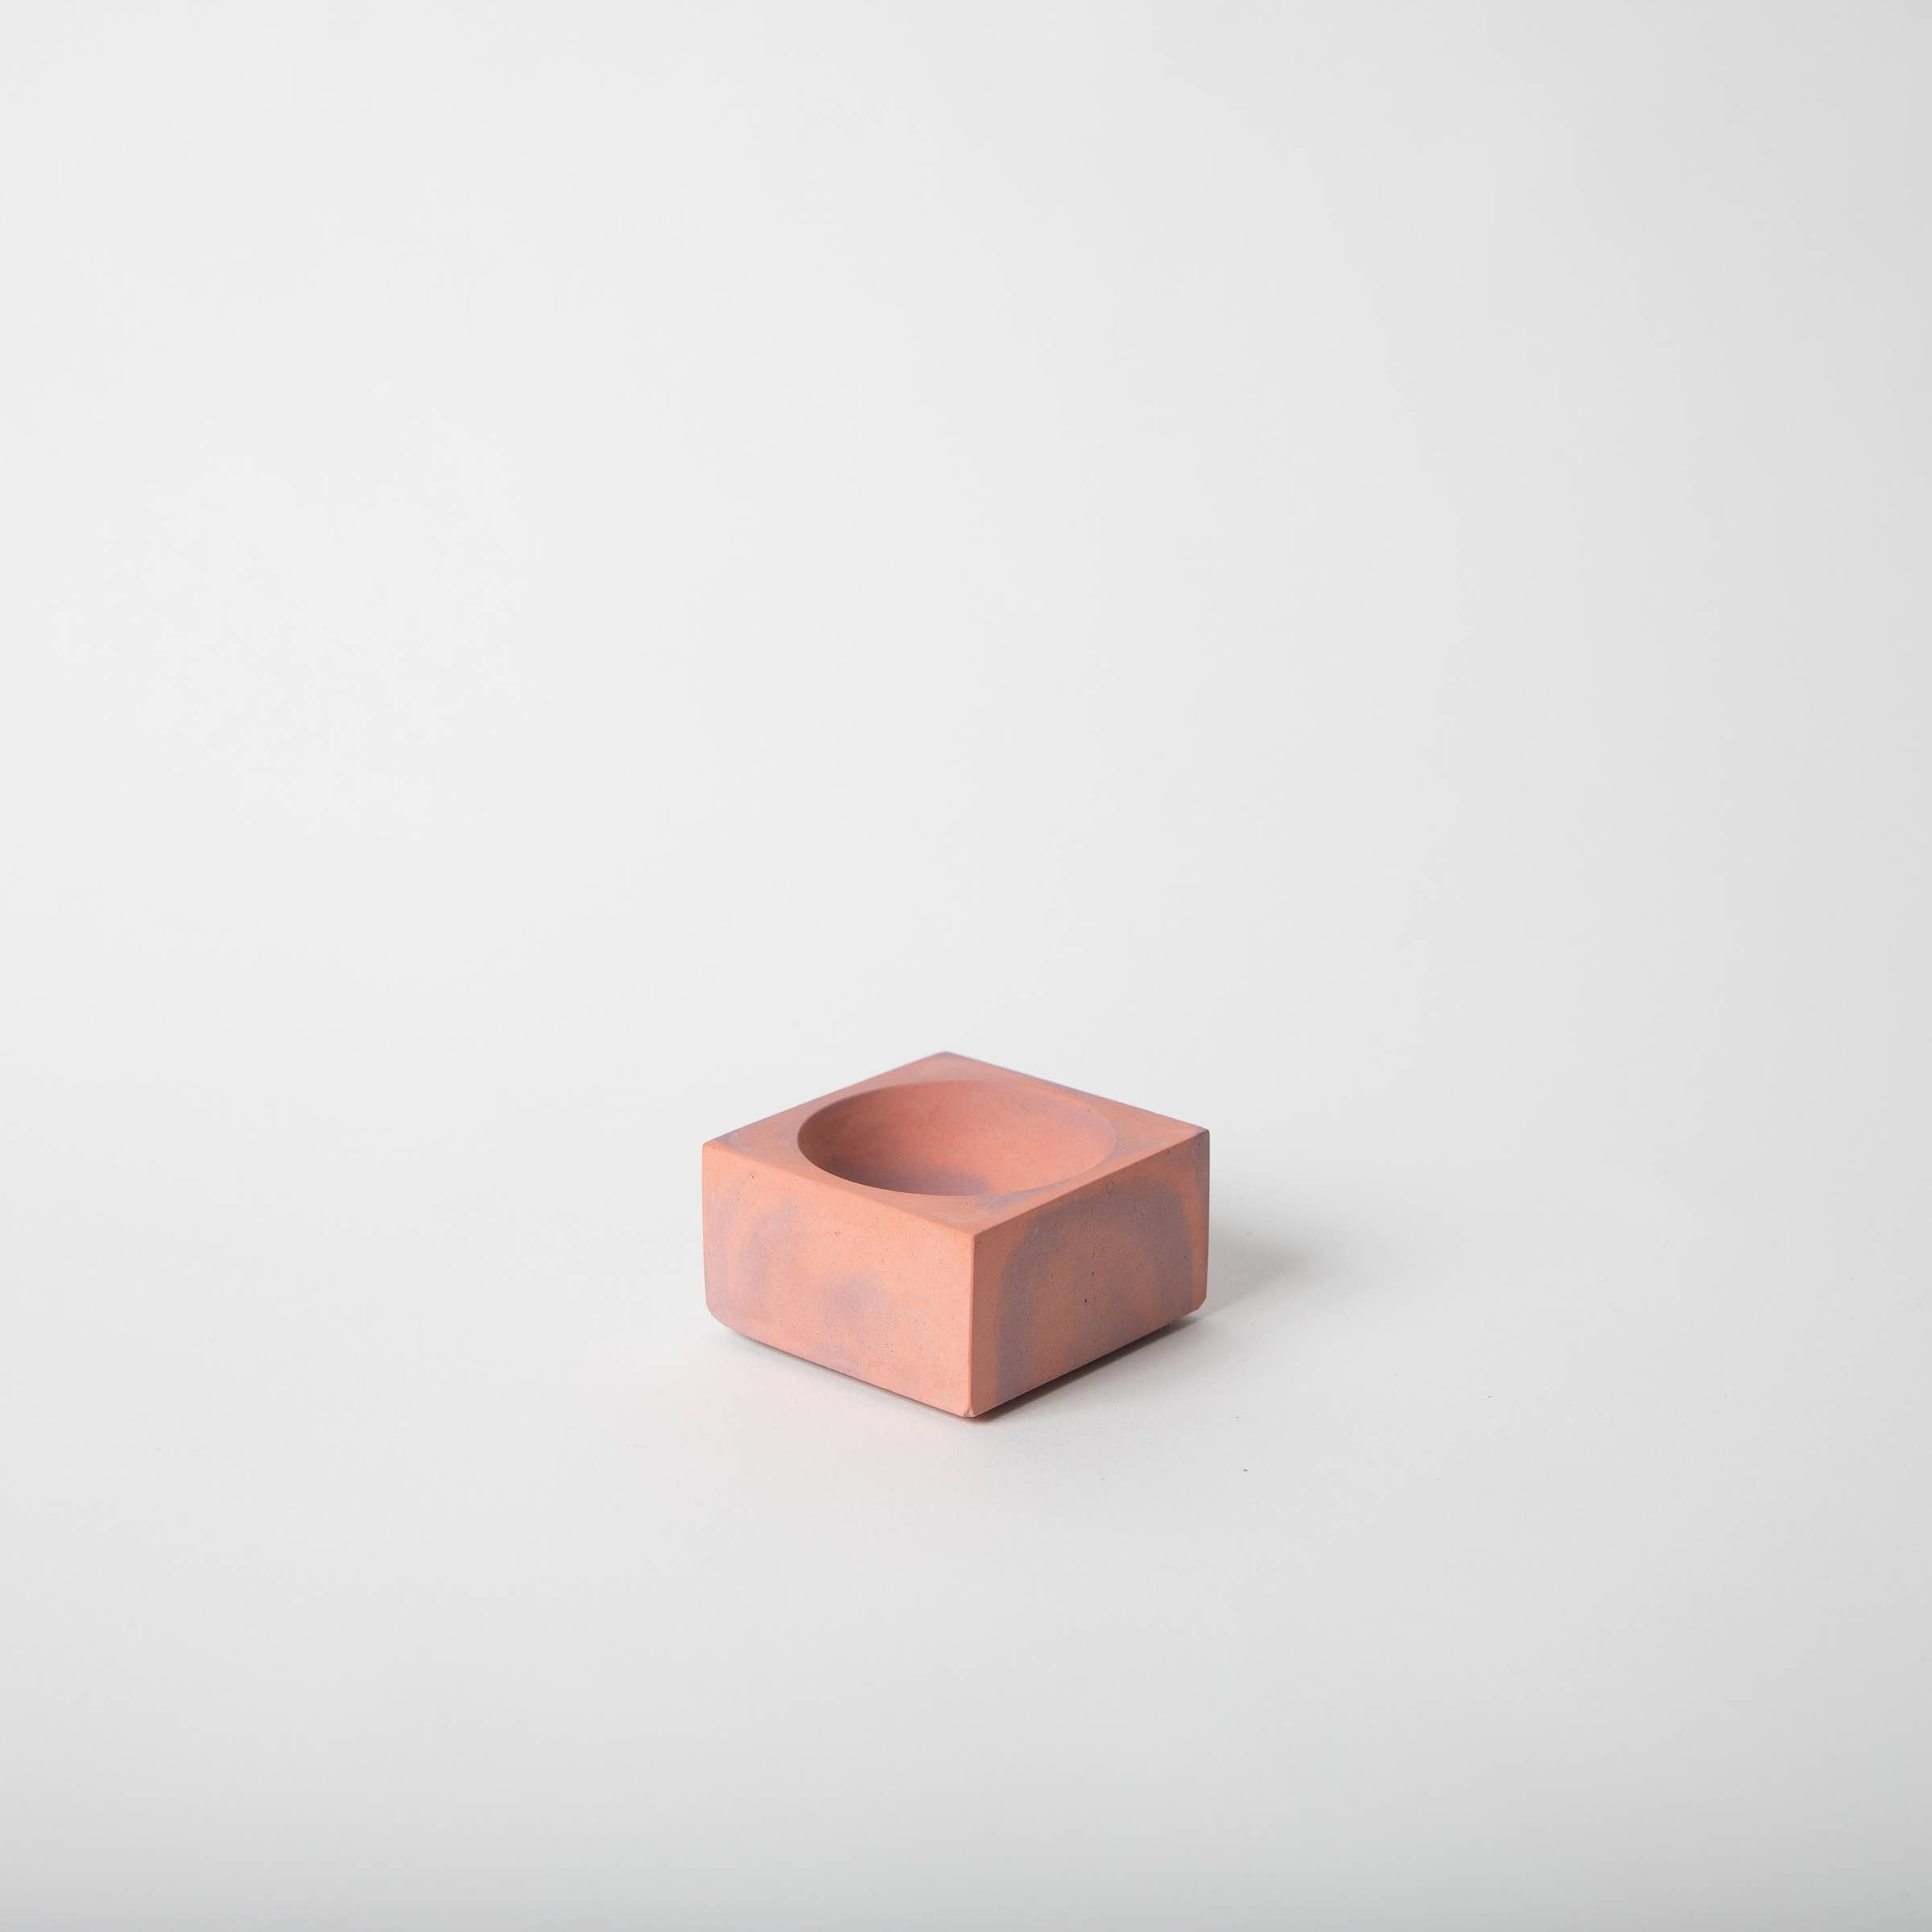 pretti.cool - Incense Holder (Square) - Marbled Concrete (Coral & Mauve)